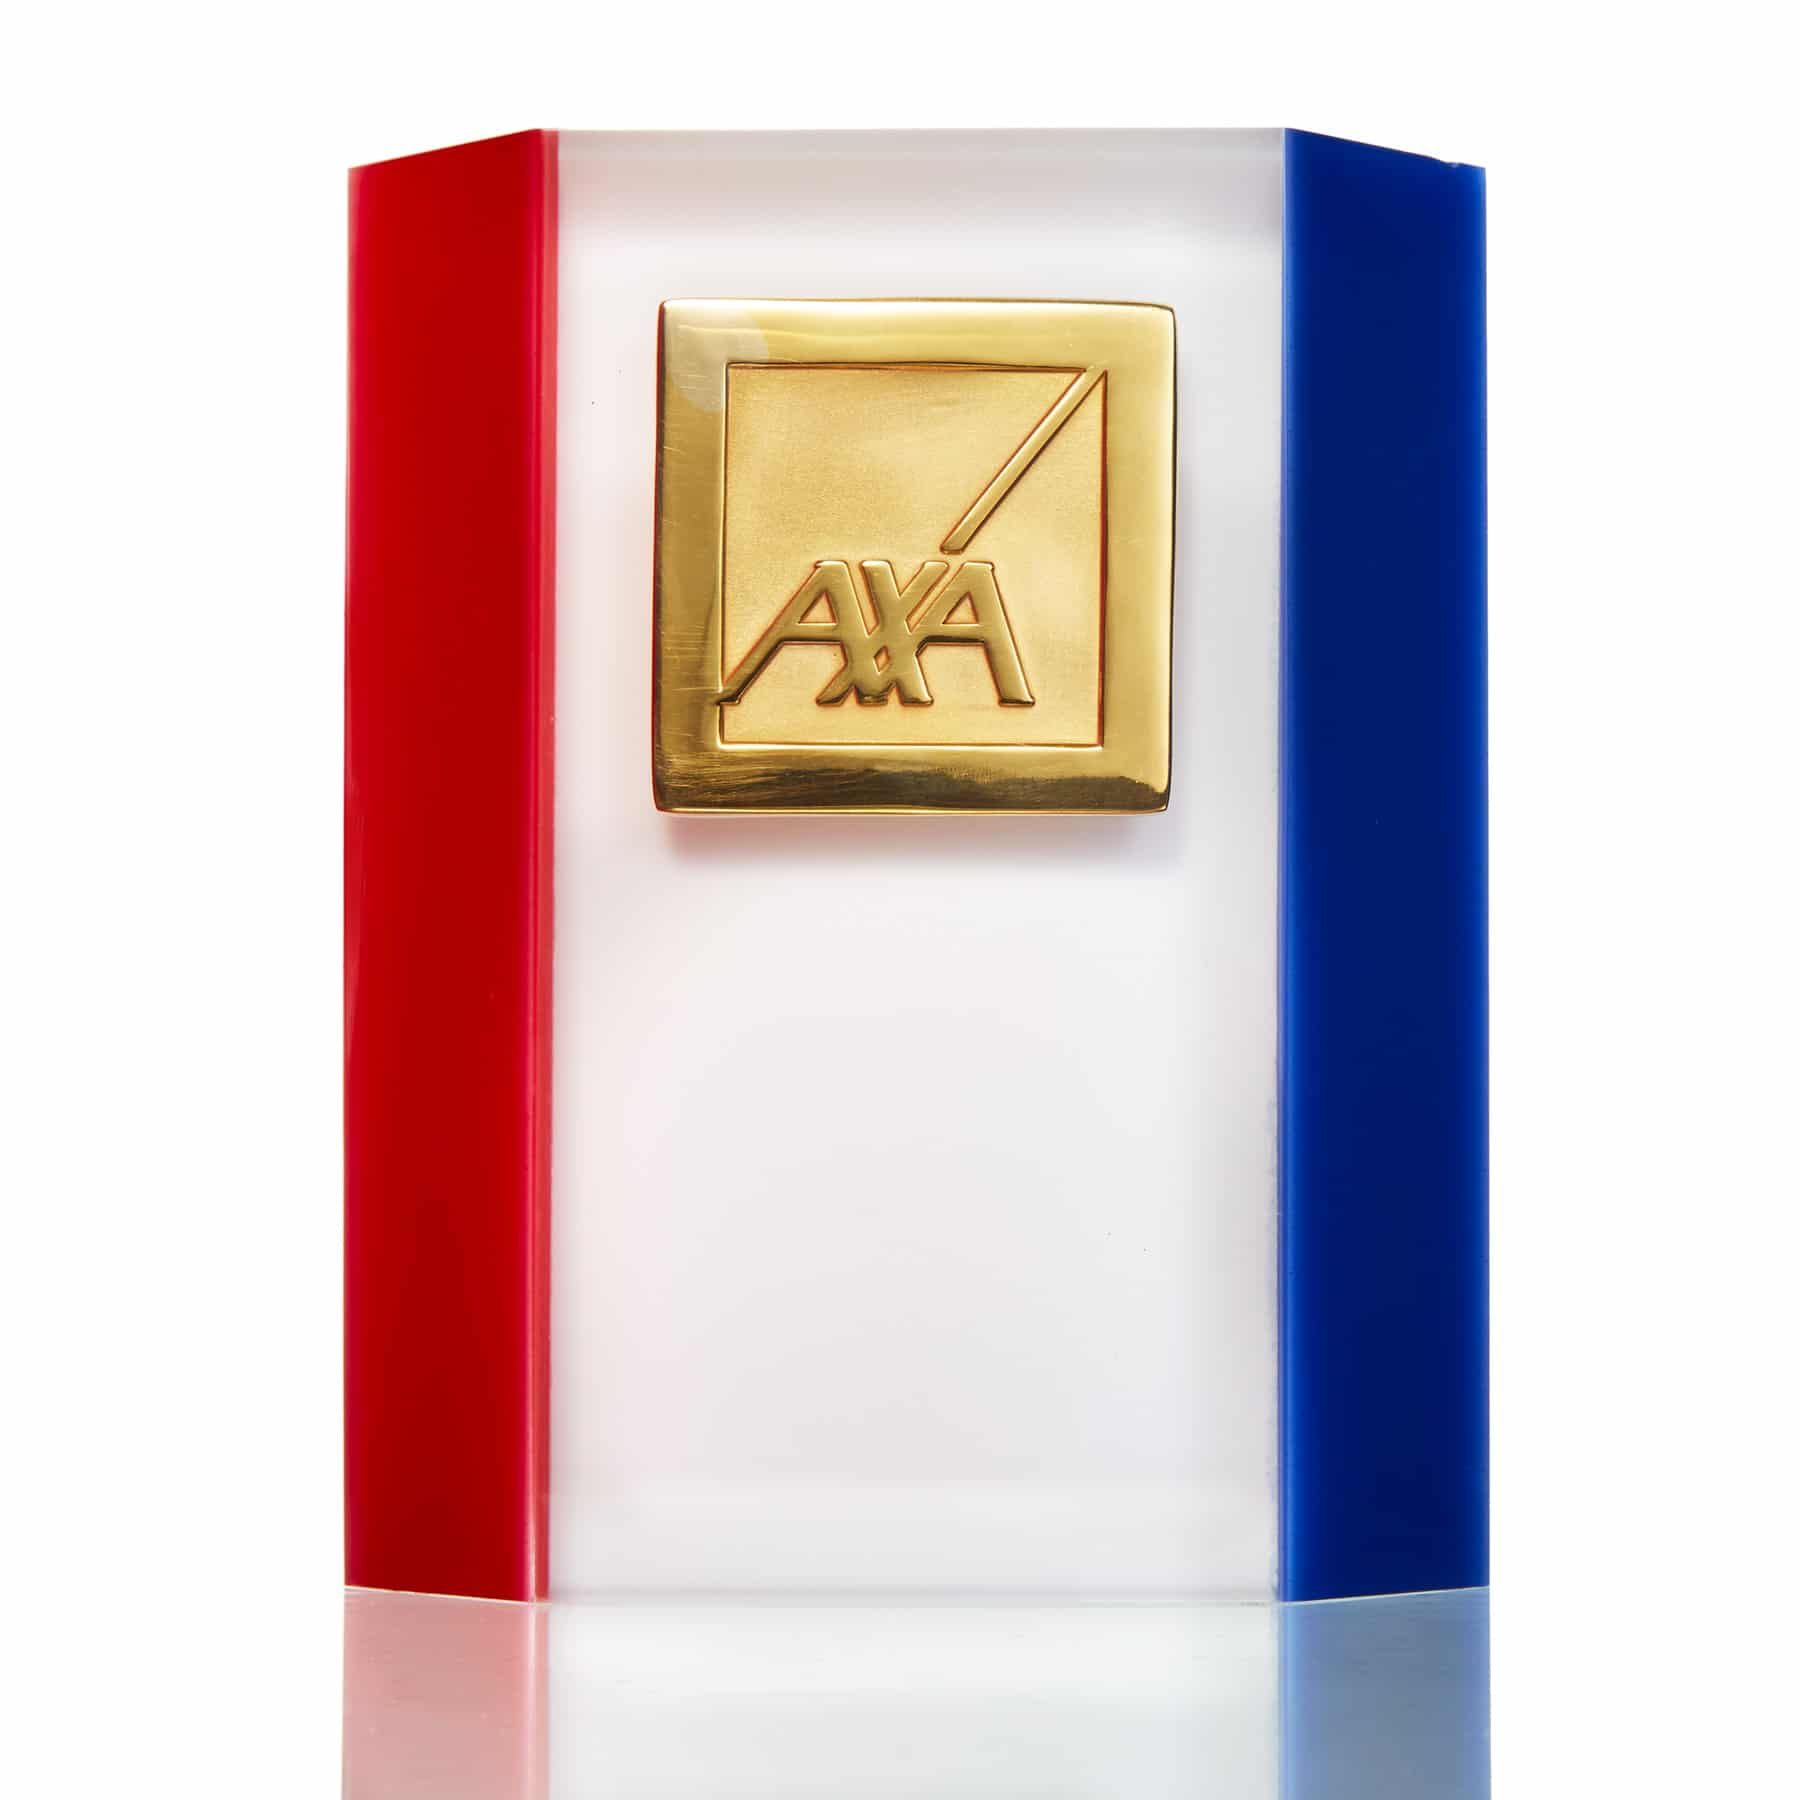 AXA Insurance - Embedment Award